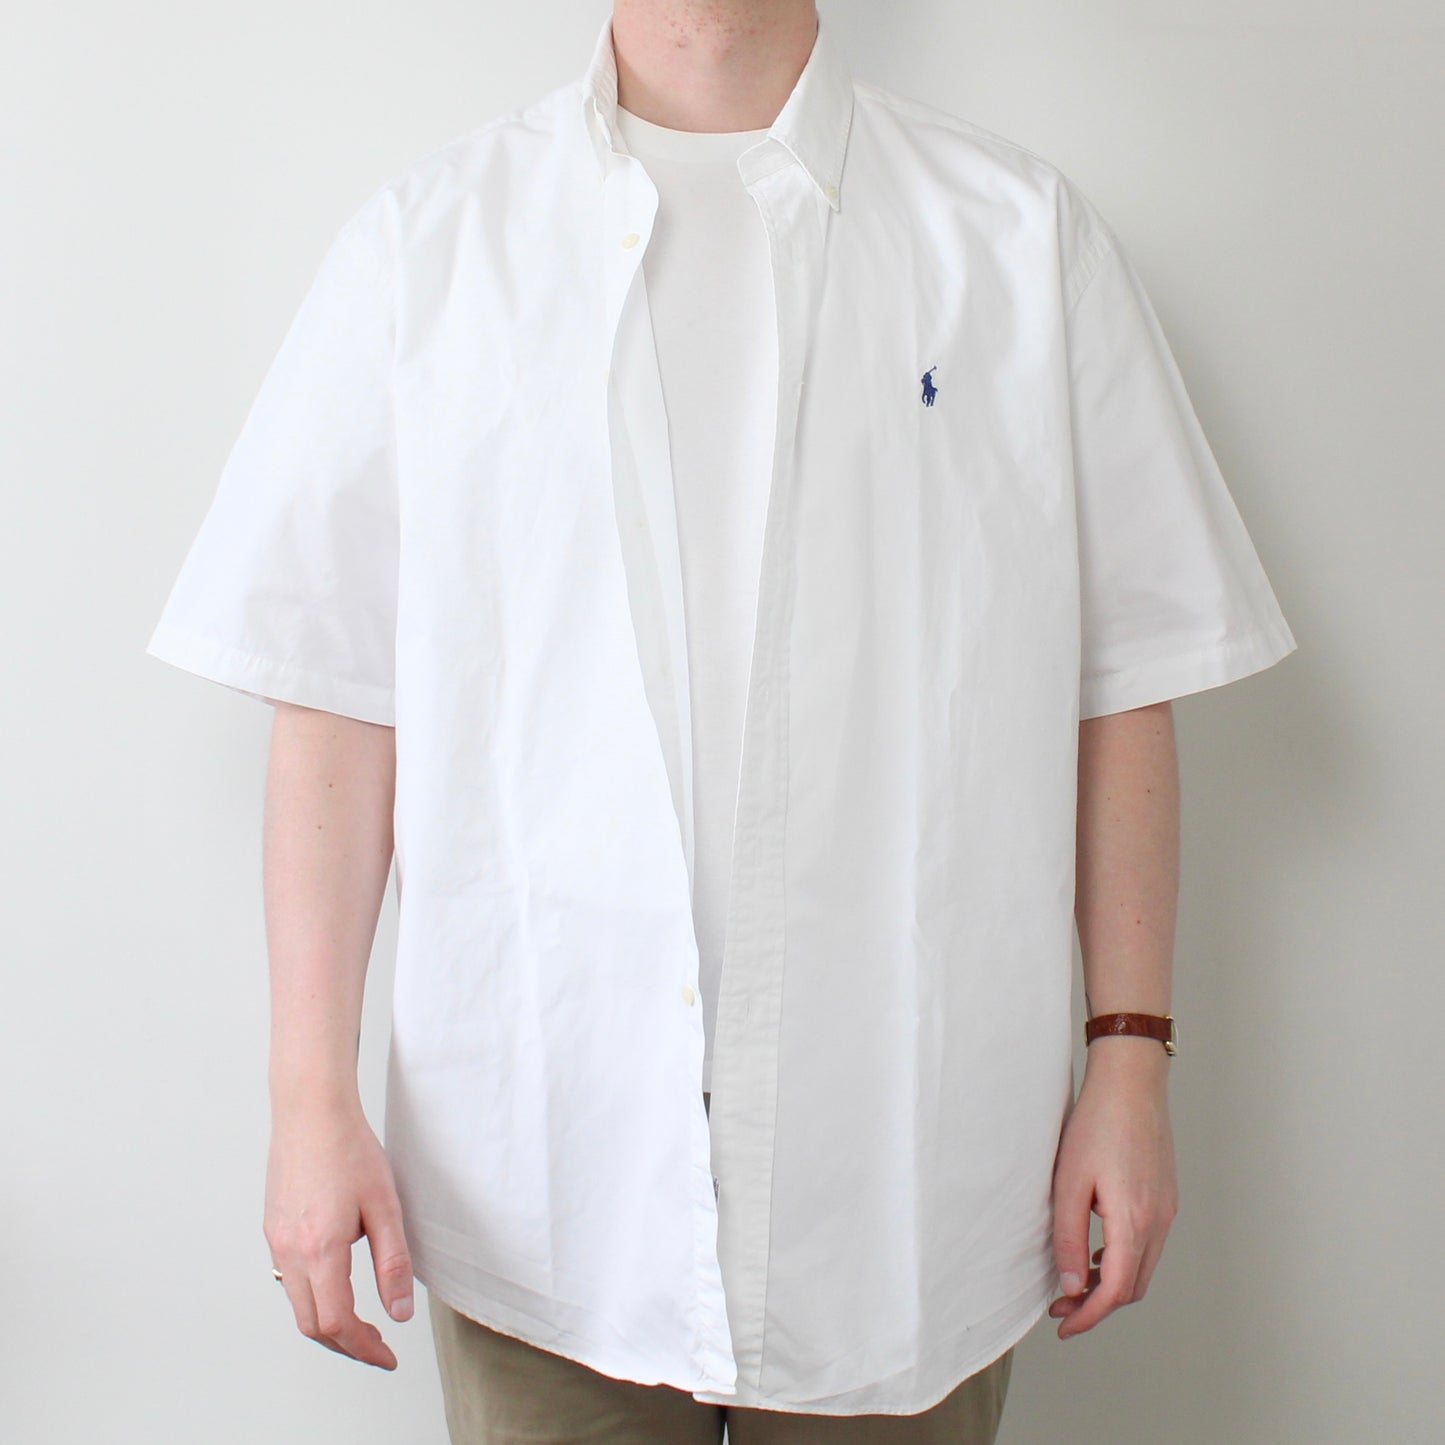 Shirt - Ralph Lauren - L